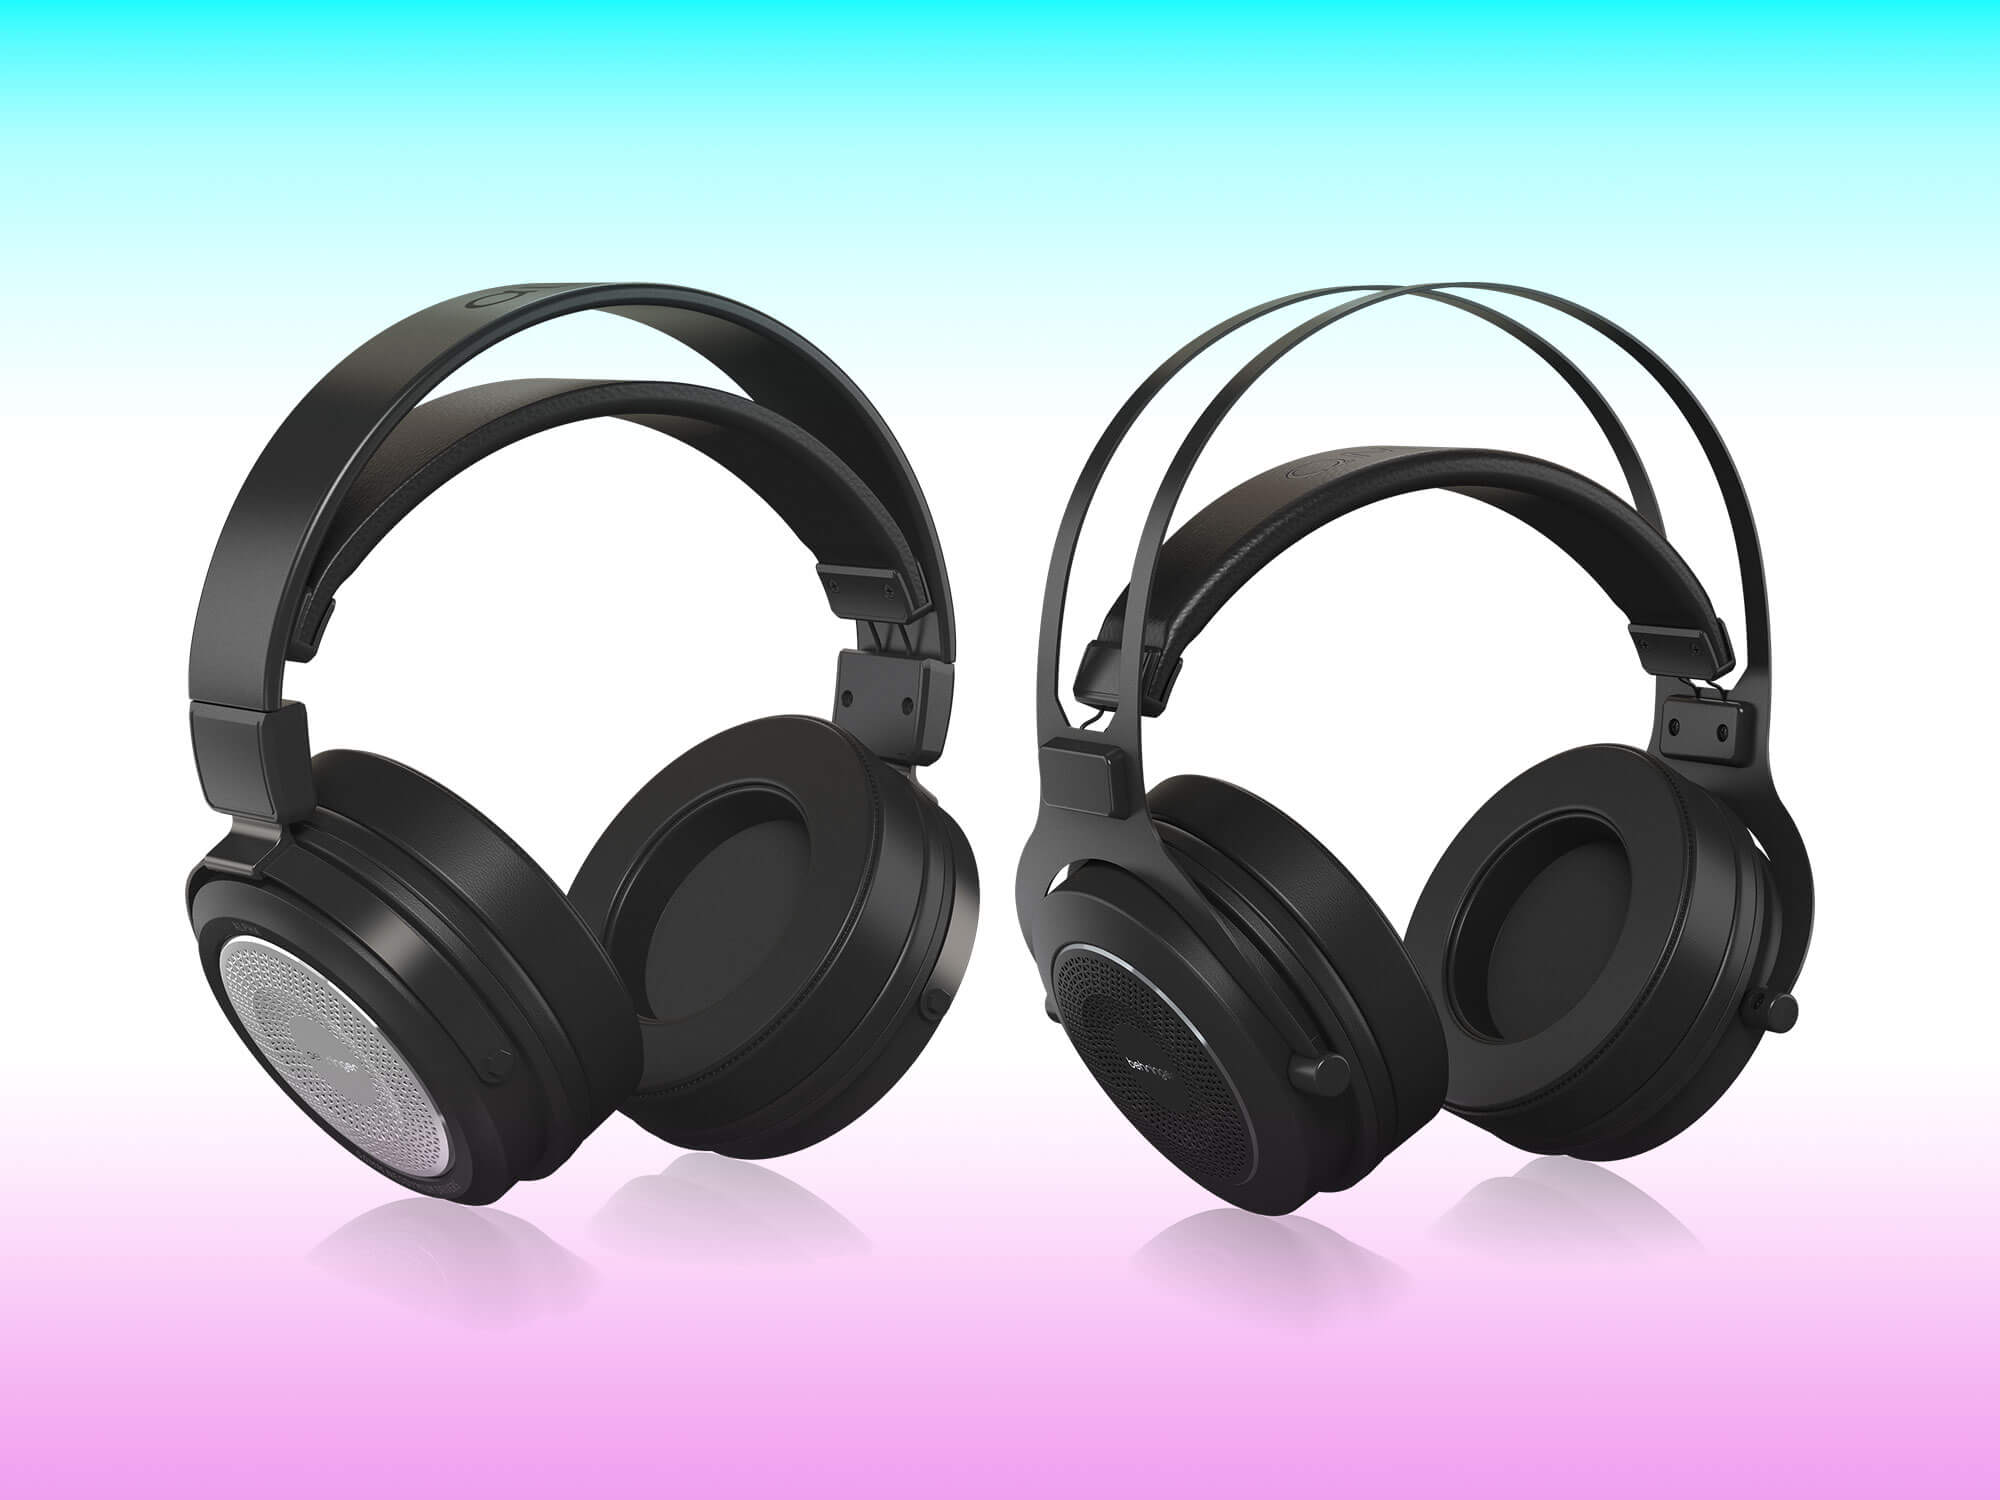 Behringer Alpha and Omega headphones